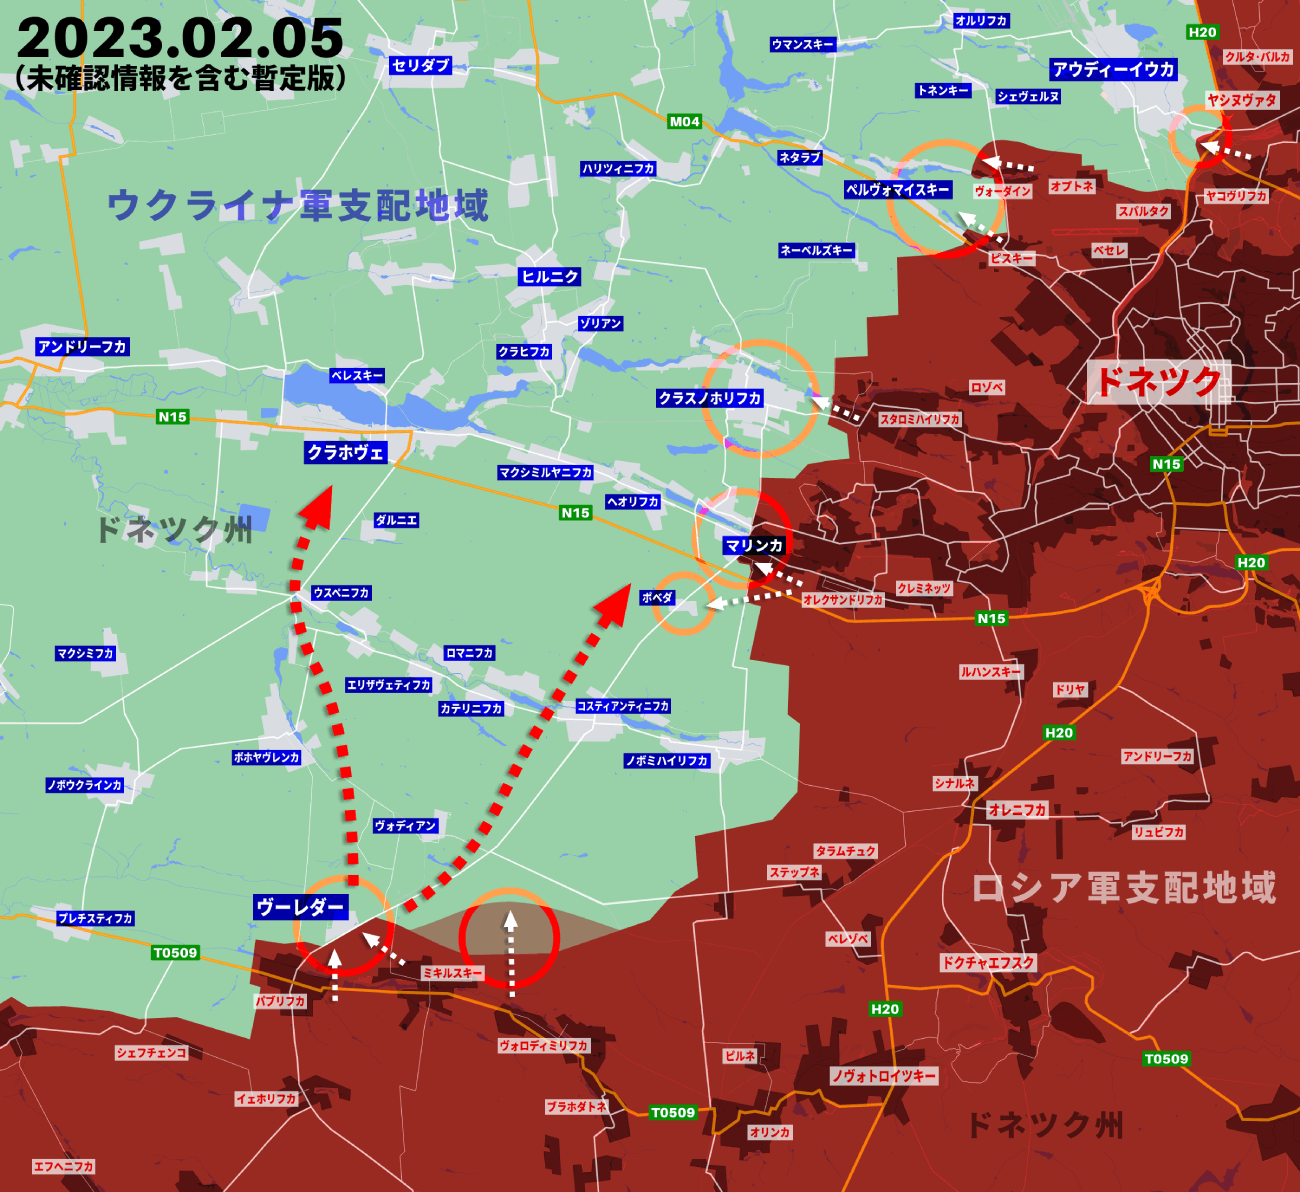 ウクライナ侵攻346日目の戦況、ロシア軍がドンバス全体で攻勢に出る